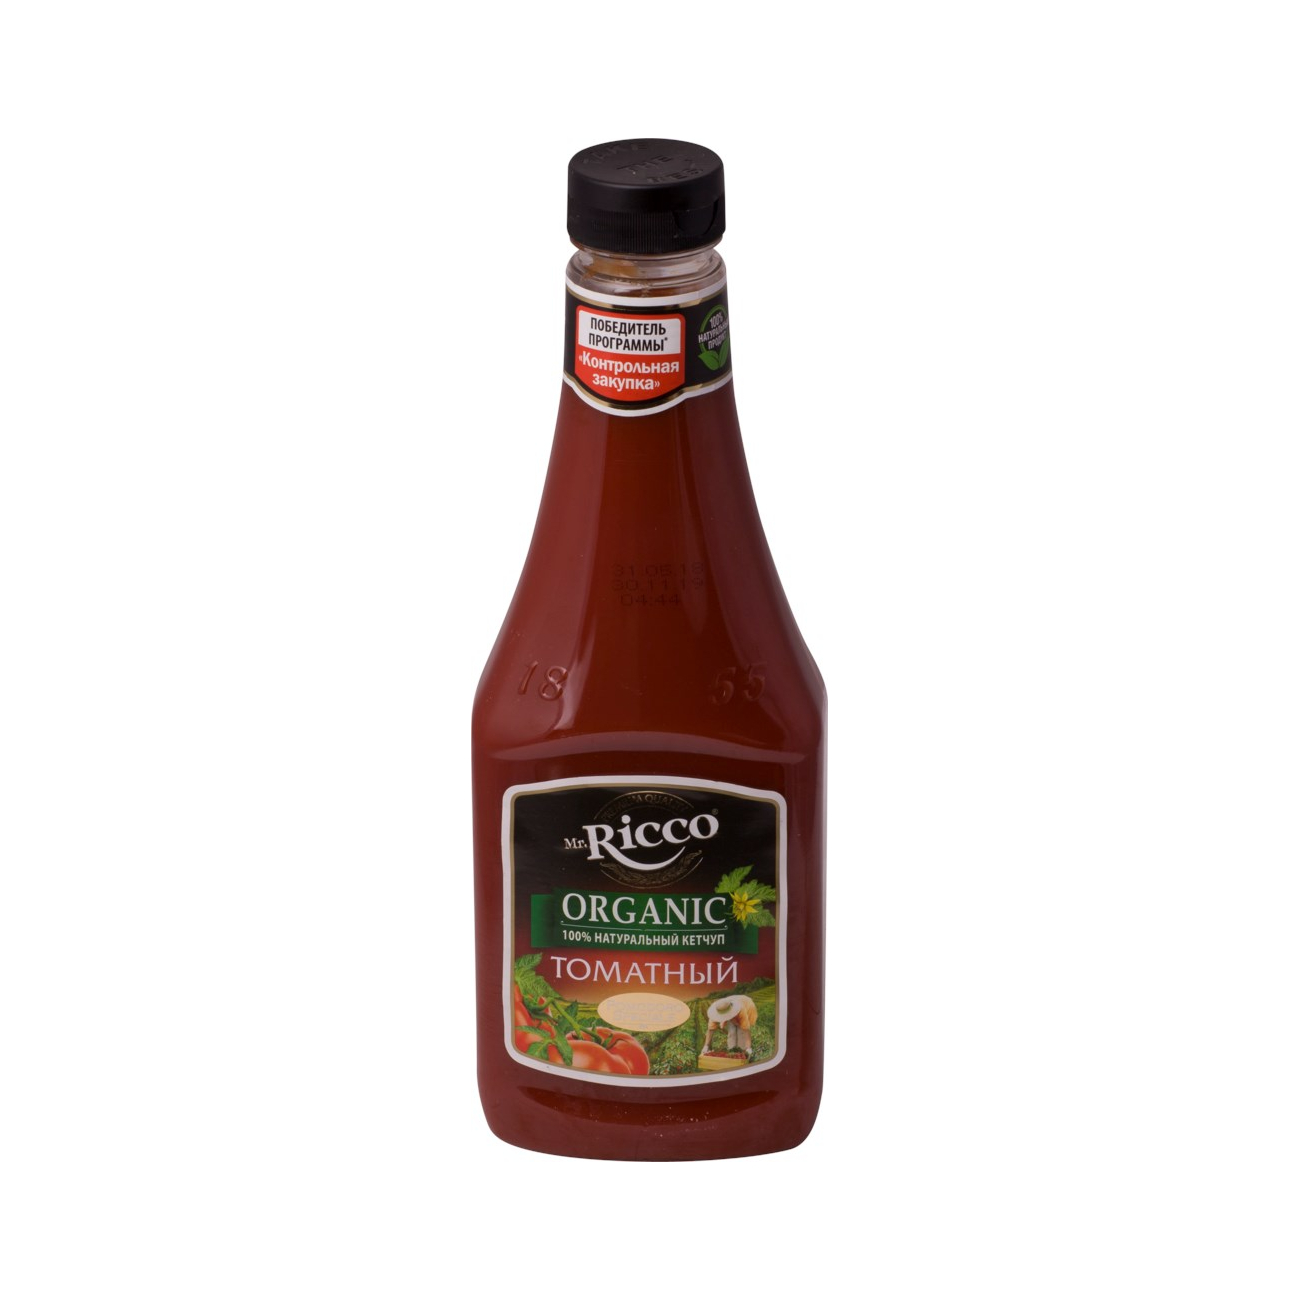 Кетчуп Mr.Ricco Томатный 940 г кетчуп томатный burcu премиум 430 г